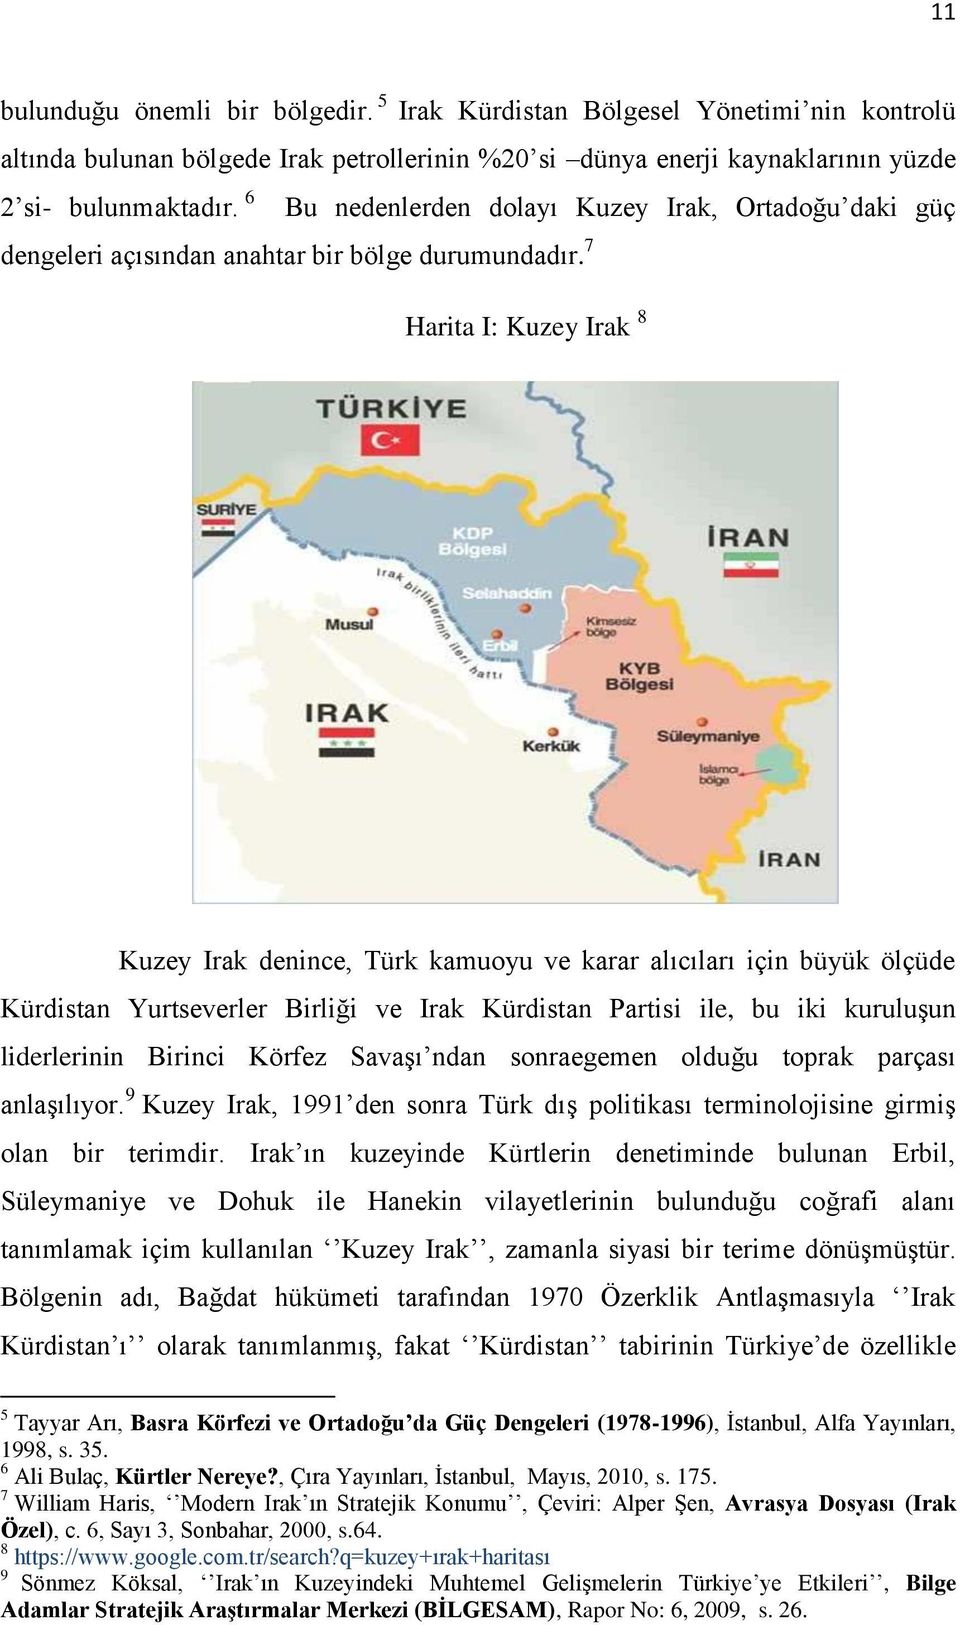 7 Harita I: Kuzey Irak 8 Kuzey Irak denince, Türk kamuoyu ve karar alıcıları için büyük ölçüde Kürdistan Yurtseverler Birliği ve Irak Kürdistan Partisi ile, bu iki kuruluşun liderlerinin Birinci